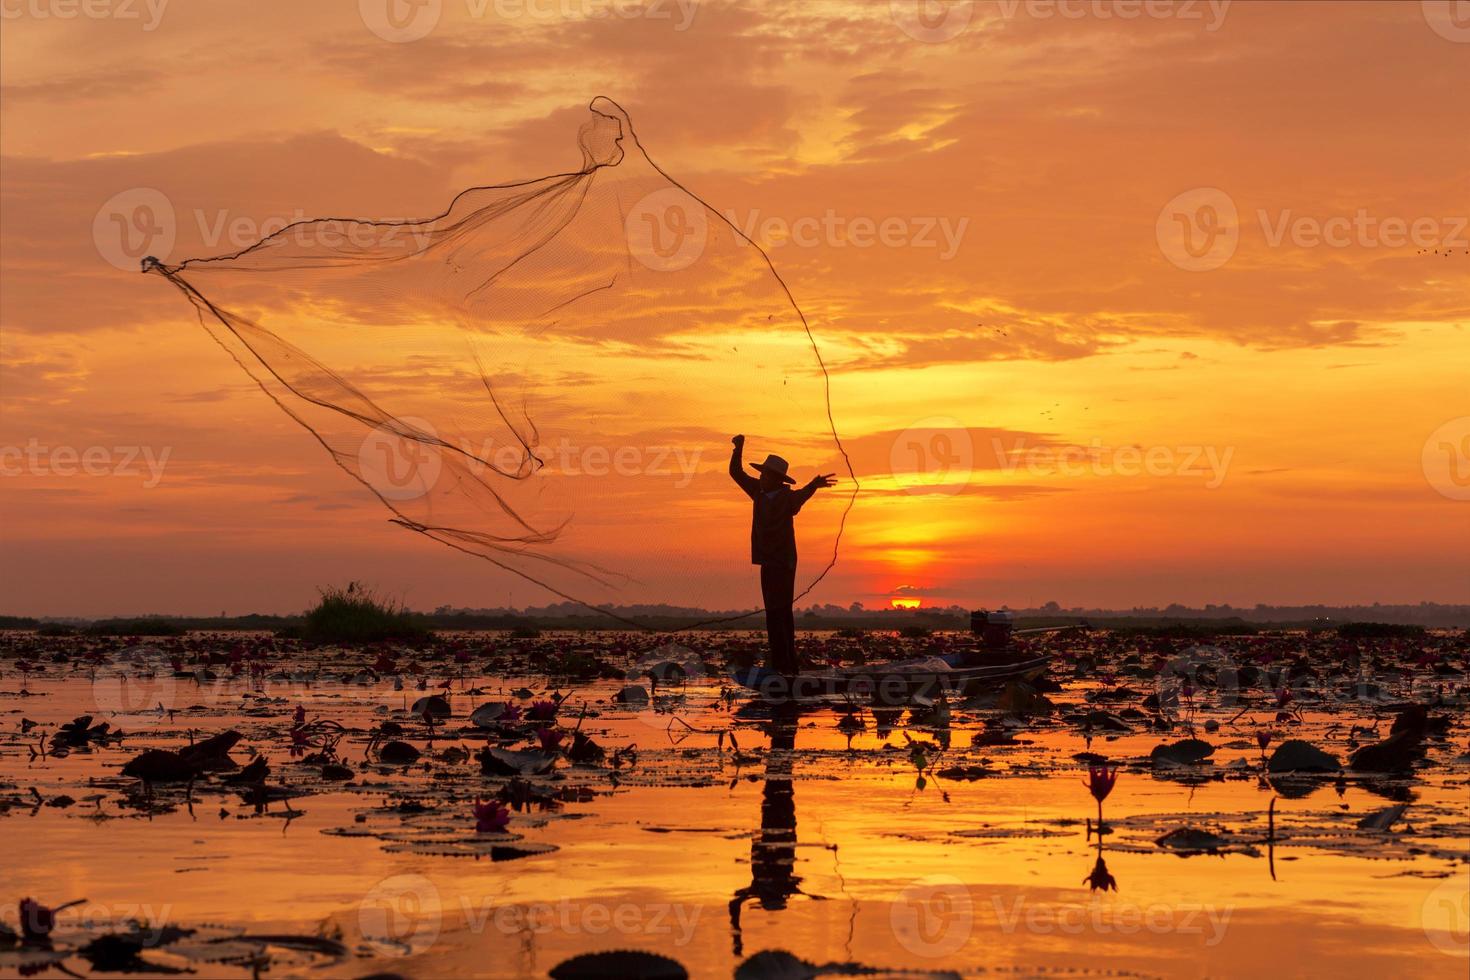 red de pesca de silueta este es un pescador de pie en un barco durante el amanecer en el lago udon thani, tailandia. foto